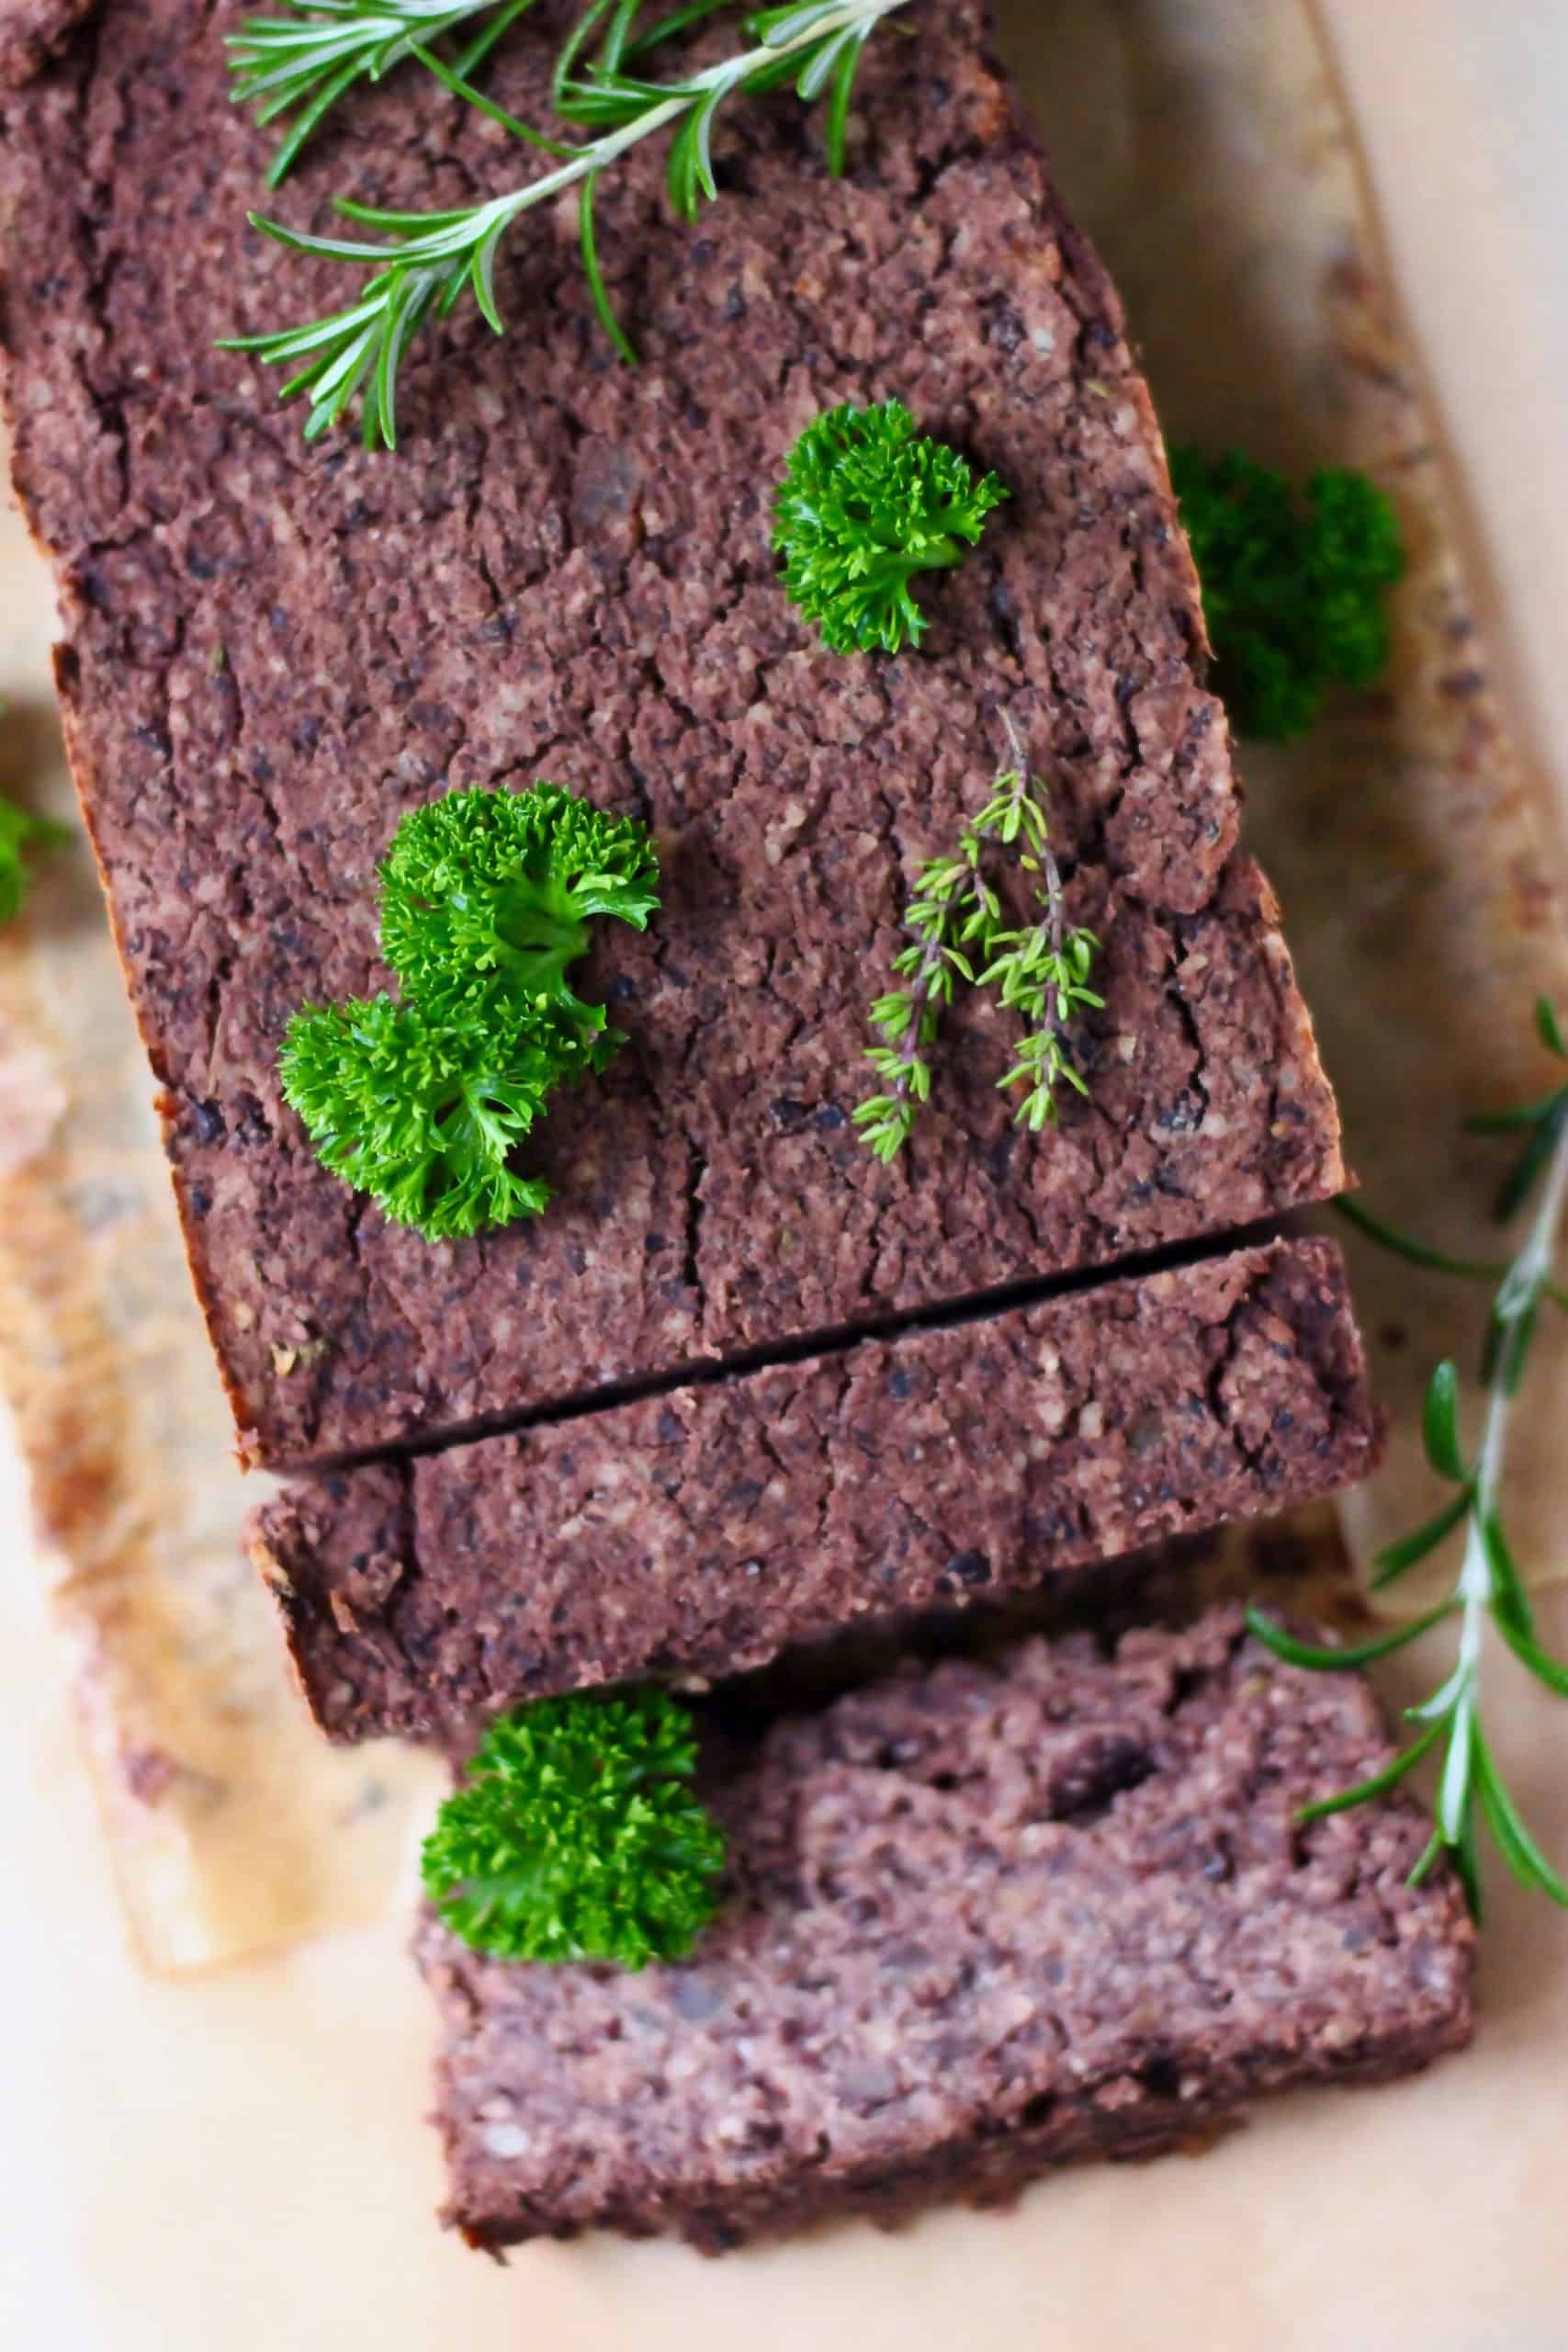 Un pastel de carne negro con dos rebanadas tomadas sobre papel de hornear marrón, espolvoreado con hierbas verdes frescas